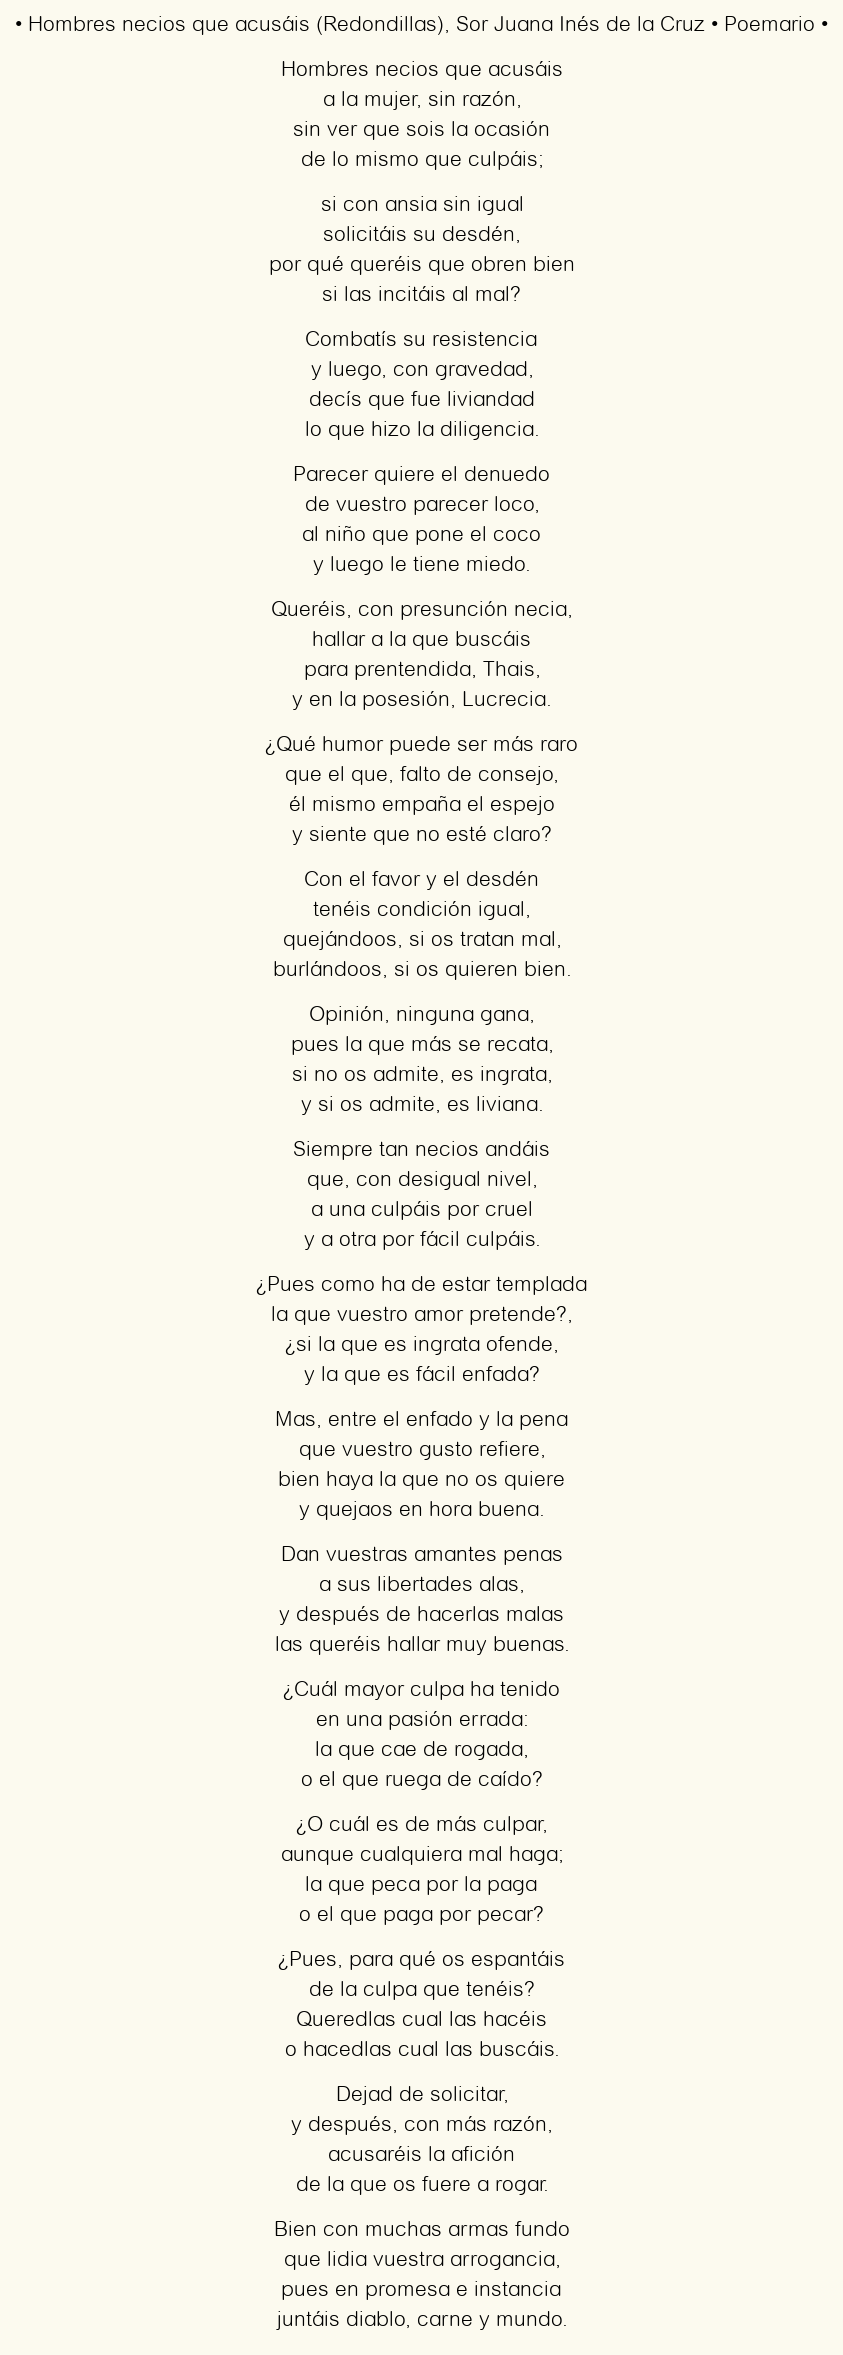 Imagen con el poema Hombres necios que acusáis (Redondillas), por Sor Juana Inés de la Cruz